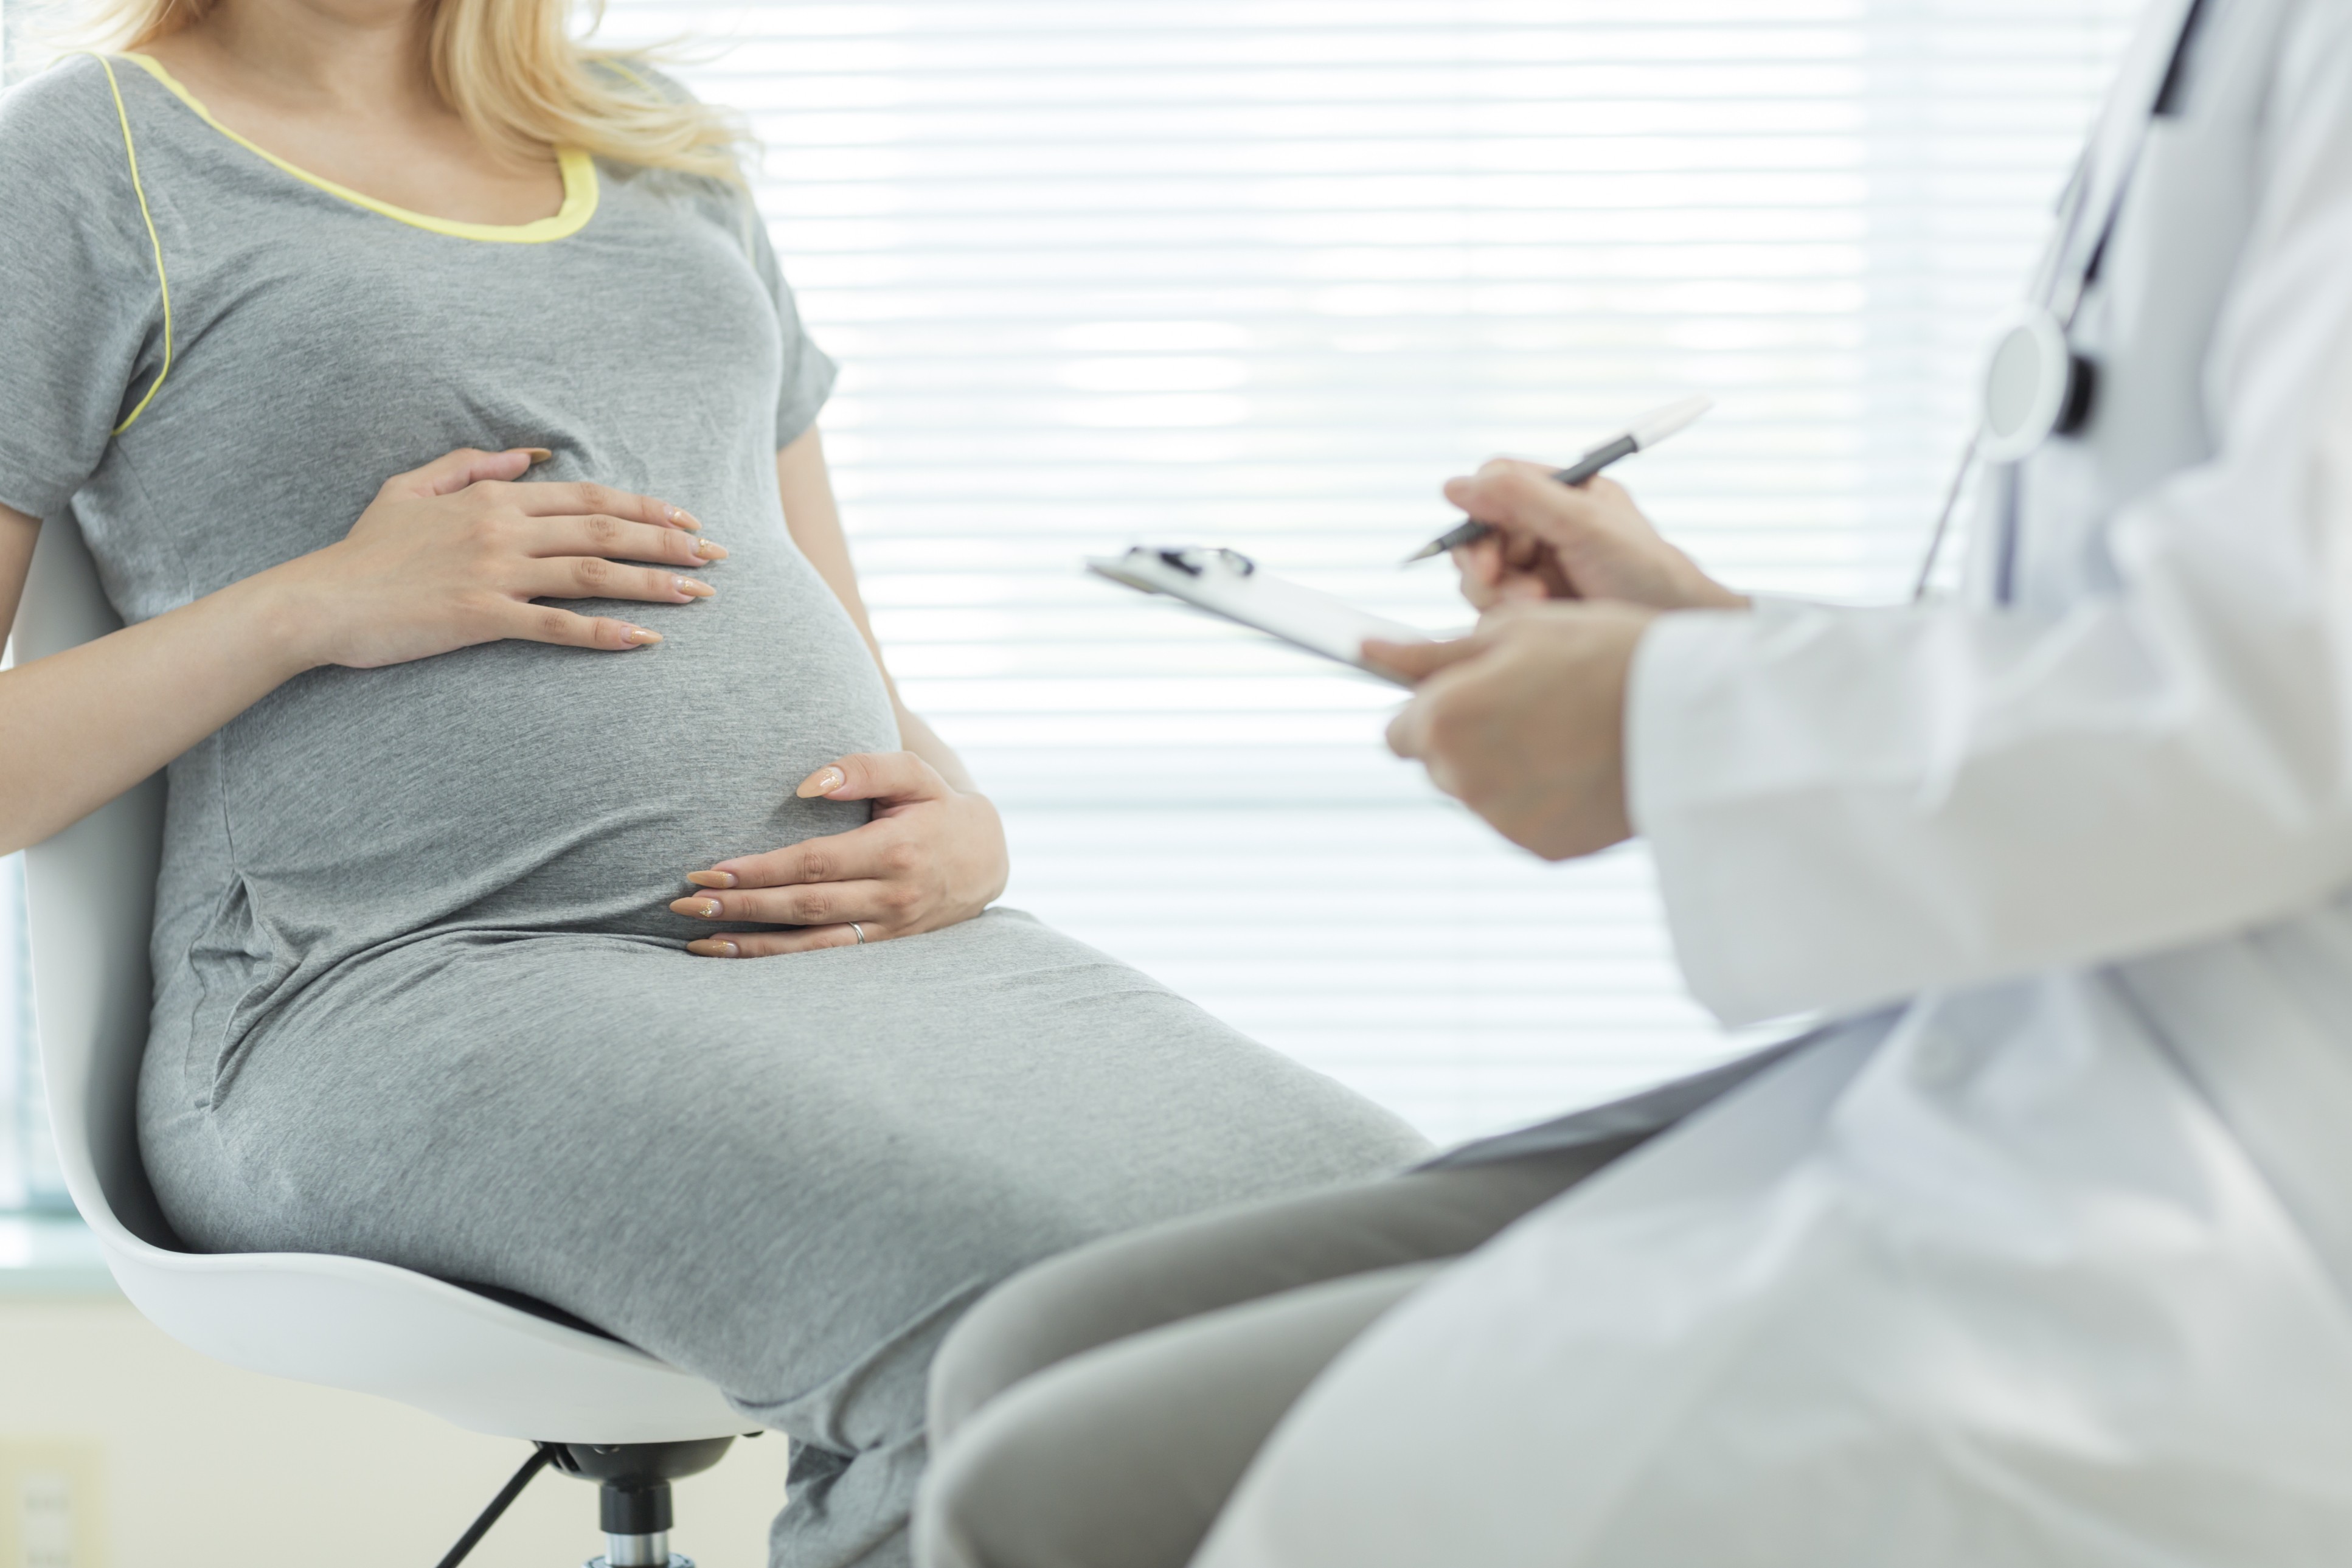 Estreptococos do grupo B: tudo o que a grávida precisa saber sobre o exame  - Revista Crescer | Saúde